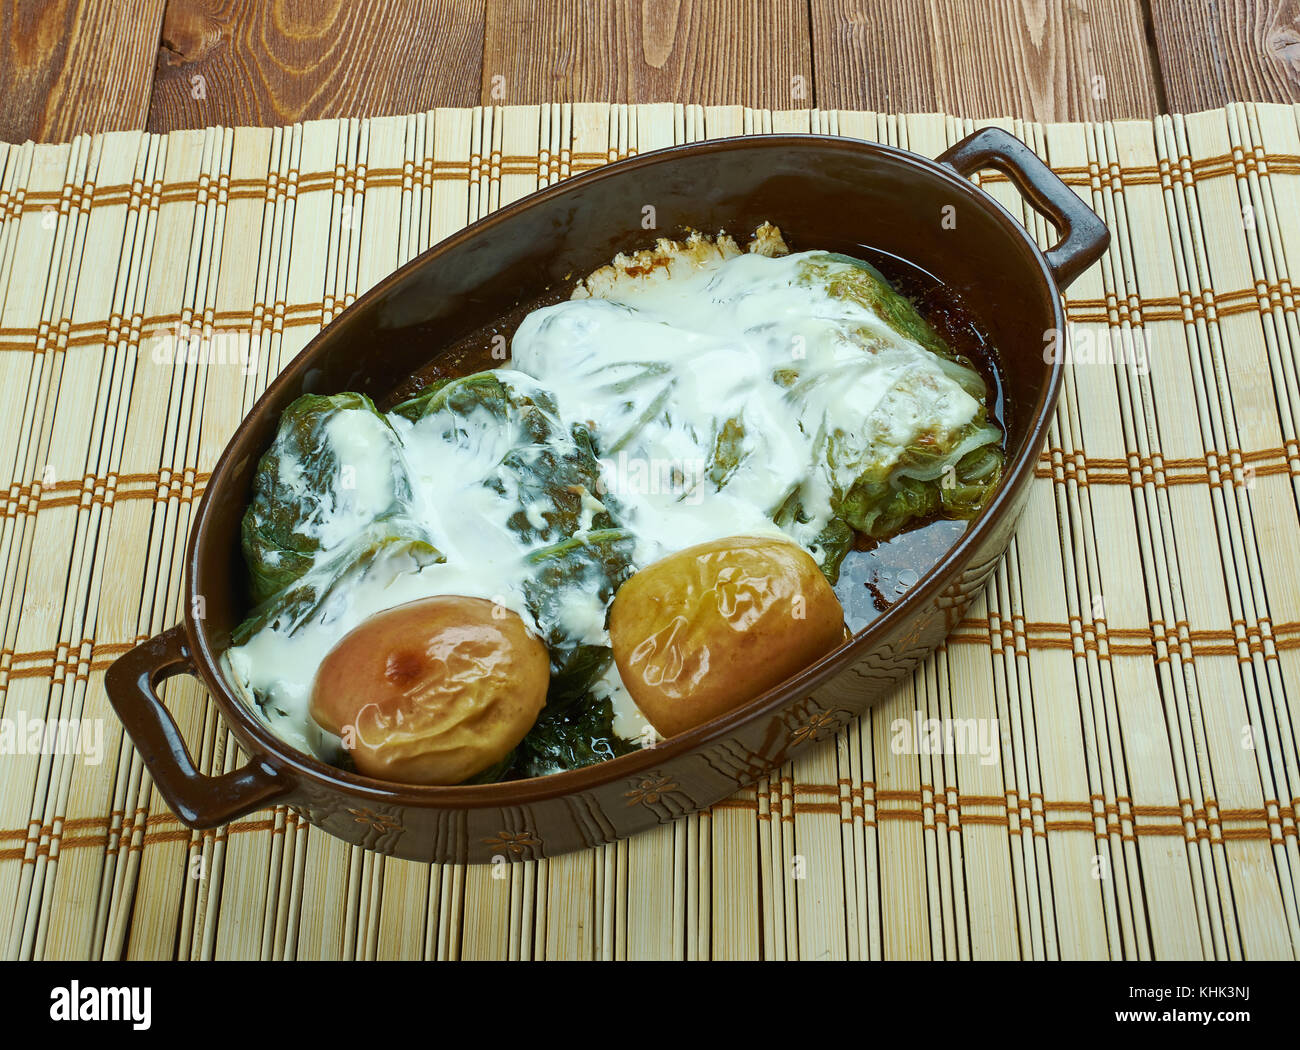 Yarpagi - stuffed cabbage leaves in sour sauce, Azerbaijani Mountain Jews  dish Stock Photo